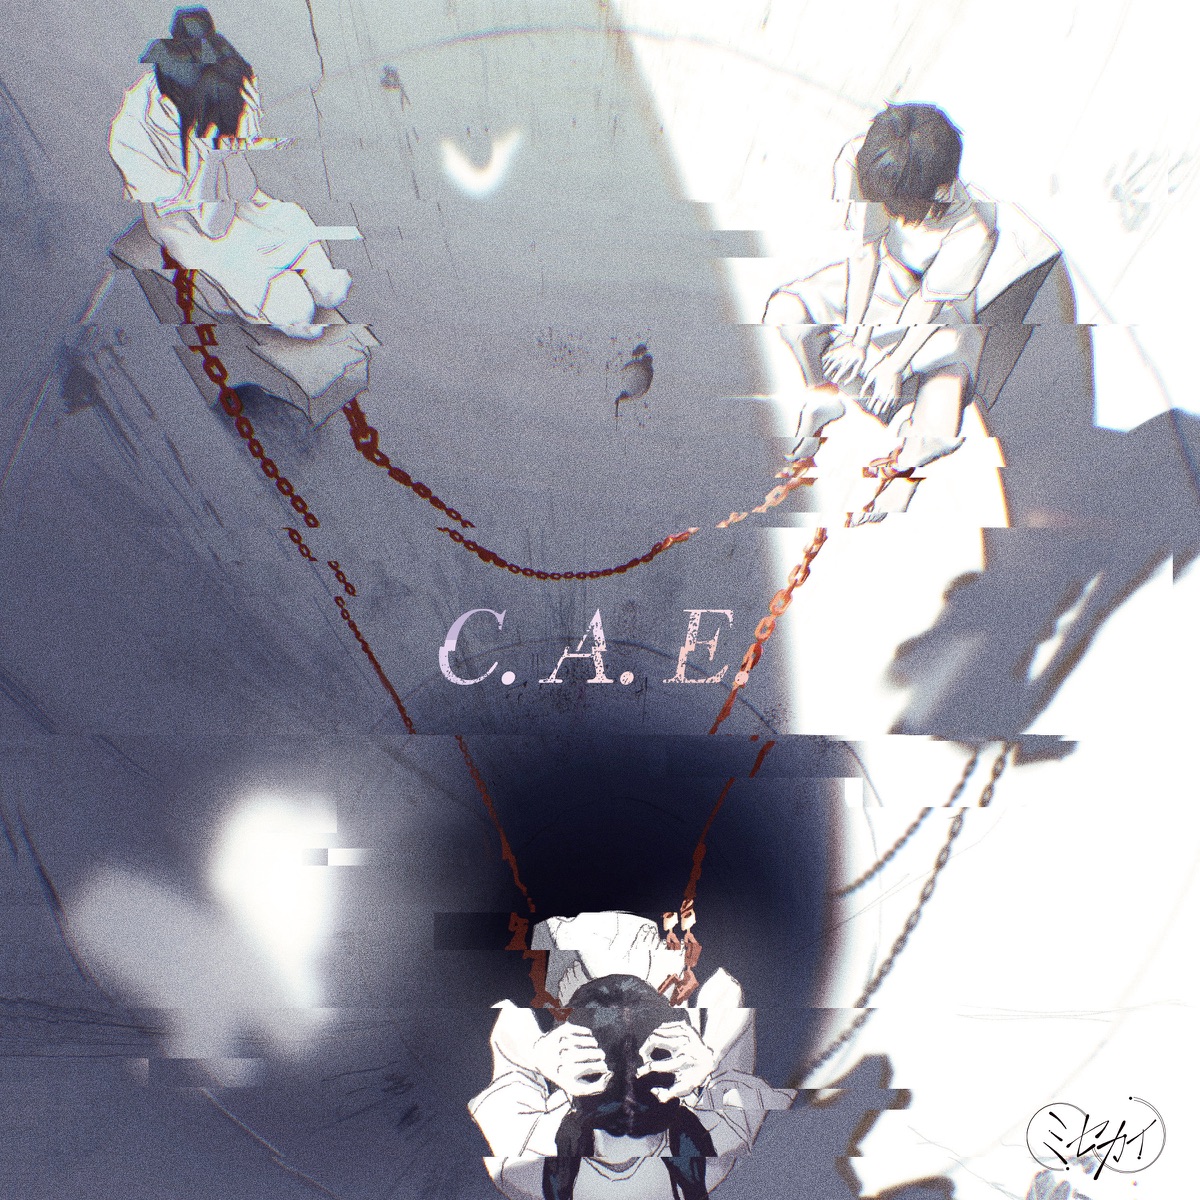 Misekai C.A.E. cover artwork